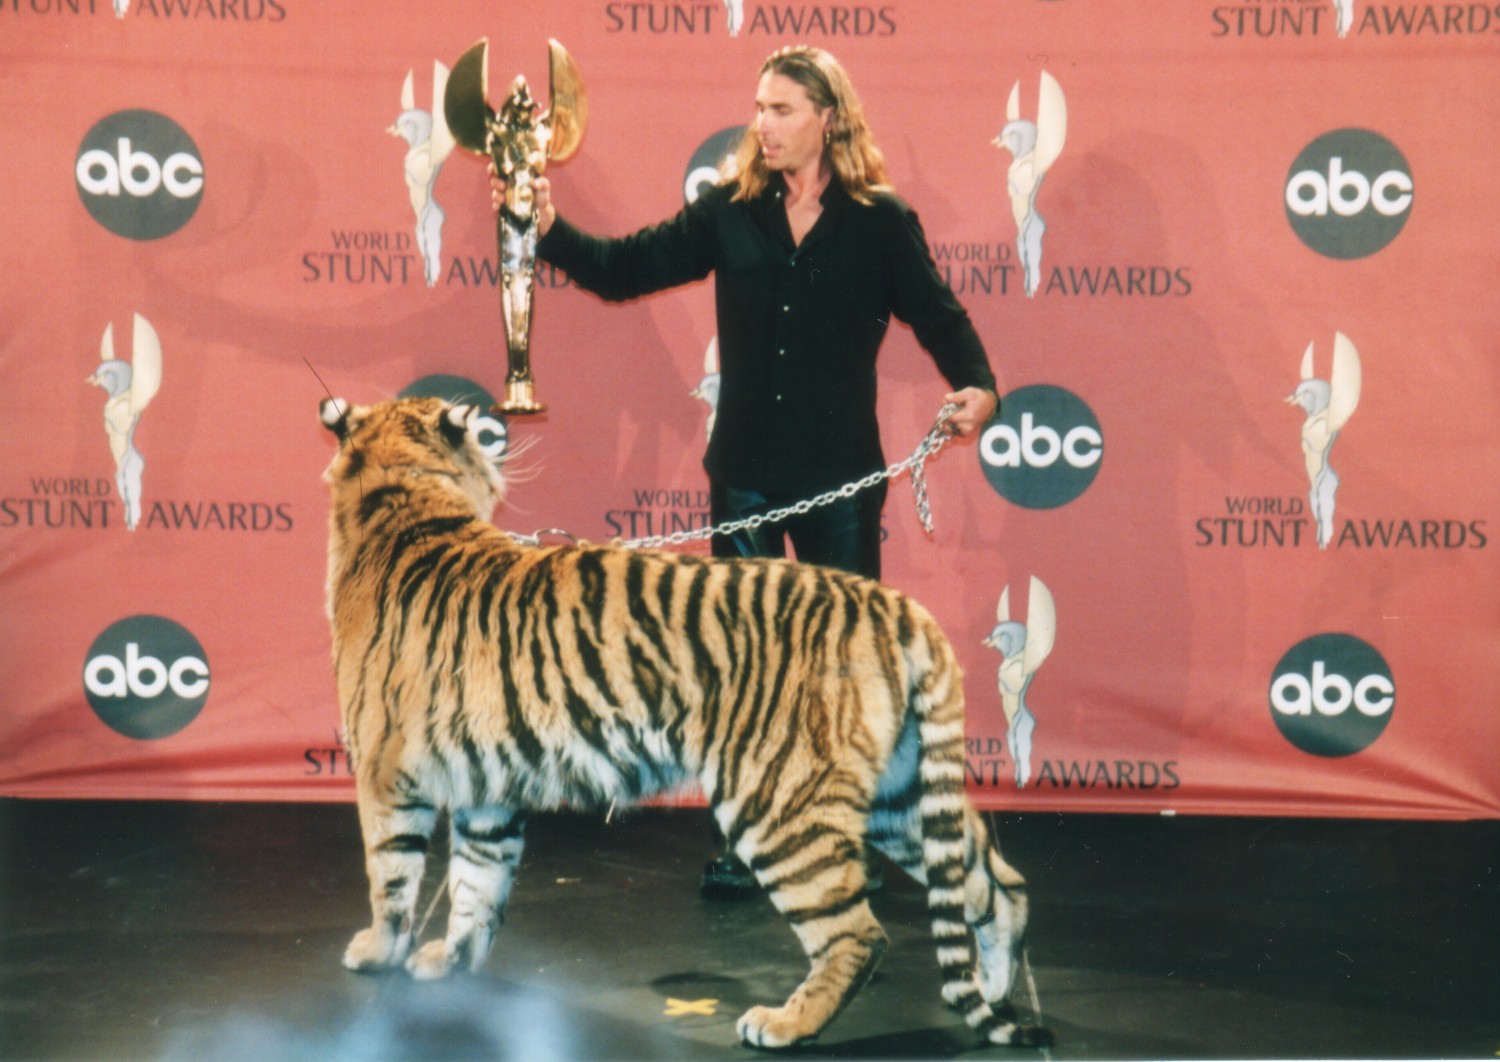 Randy Miller and Tara the tiger at the 2001 World Stunt Awards